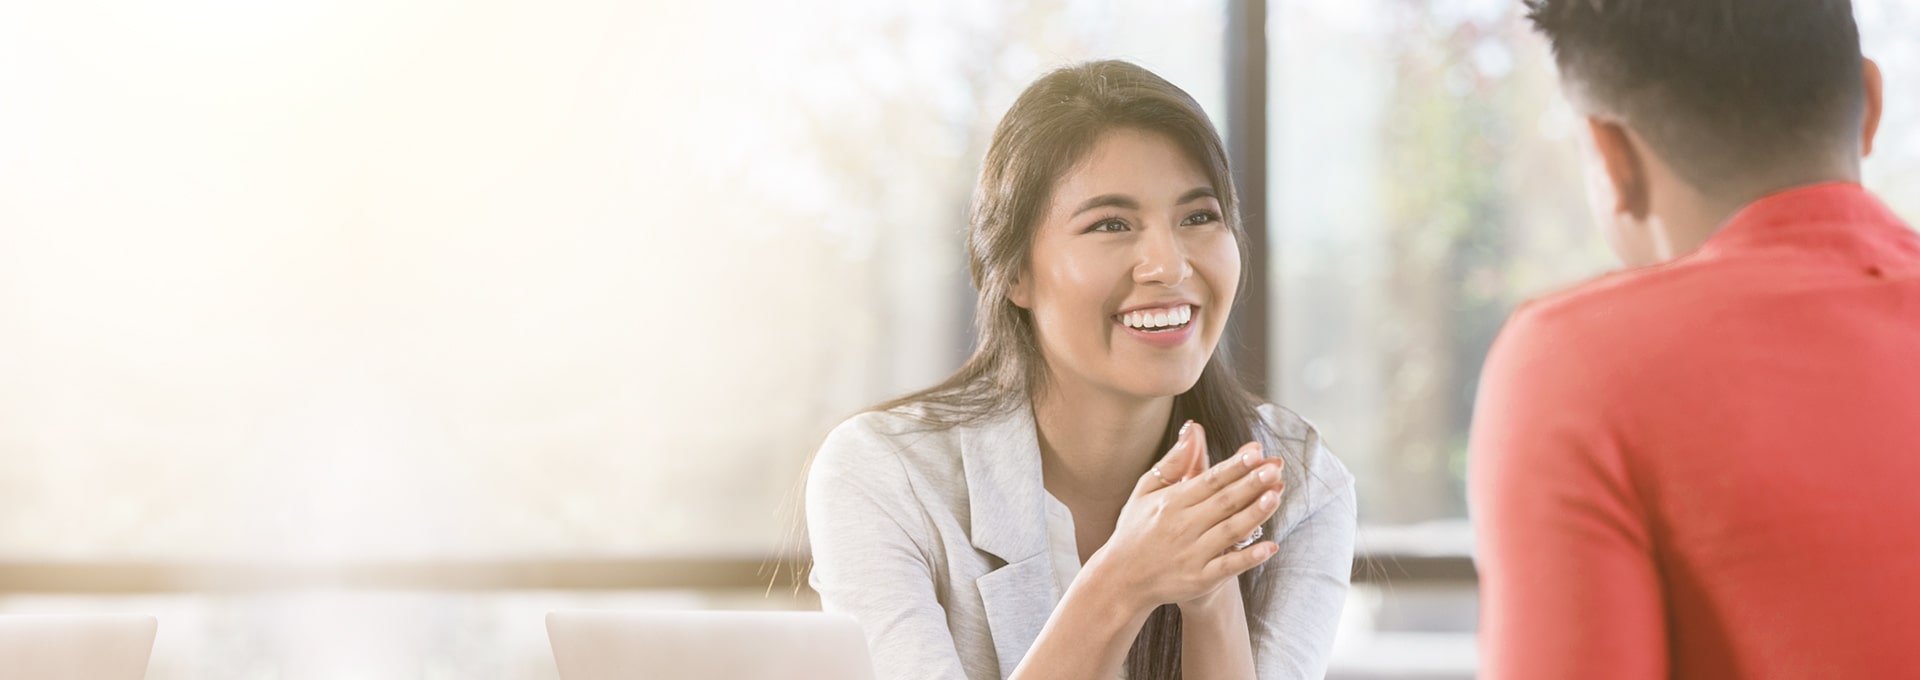 Leende affärskvinna glad på grund av positiva förändringar från Bernafon hörapparater som pratar med en klient i en röd skjorta